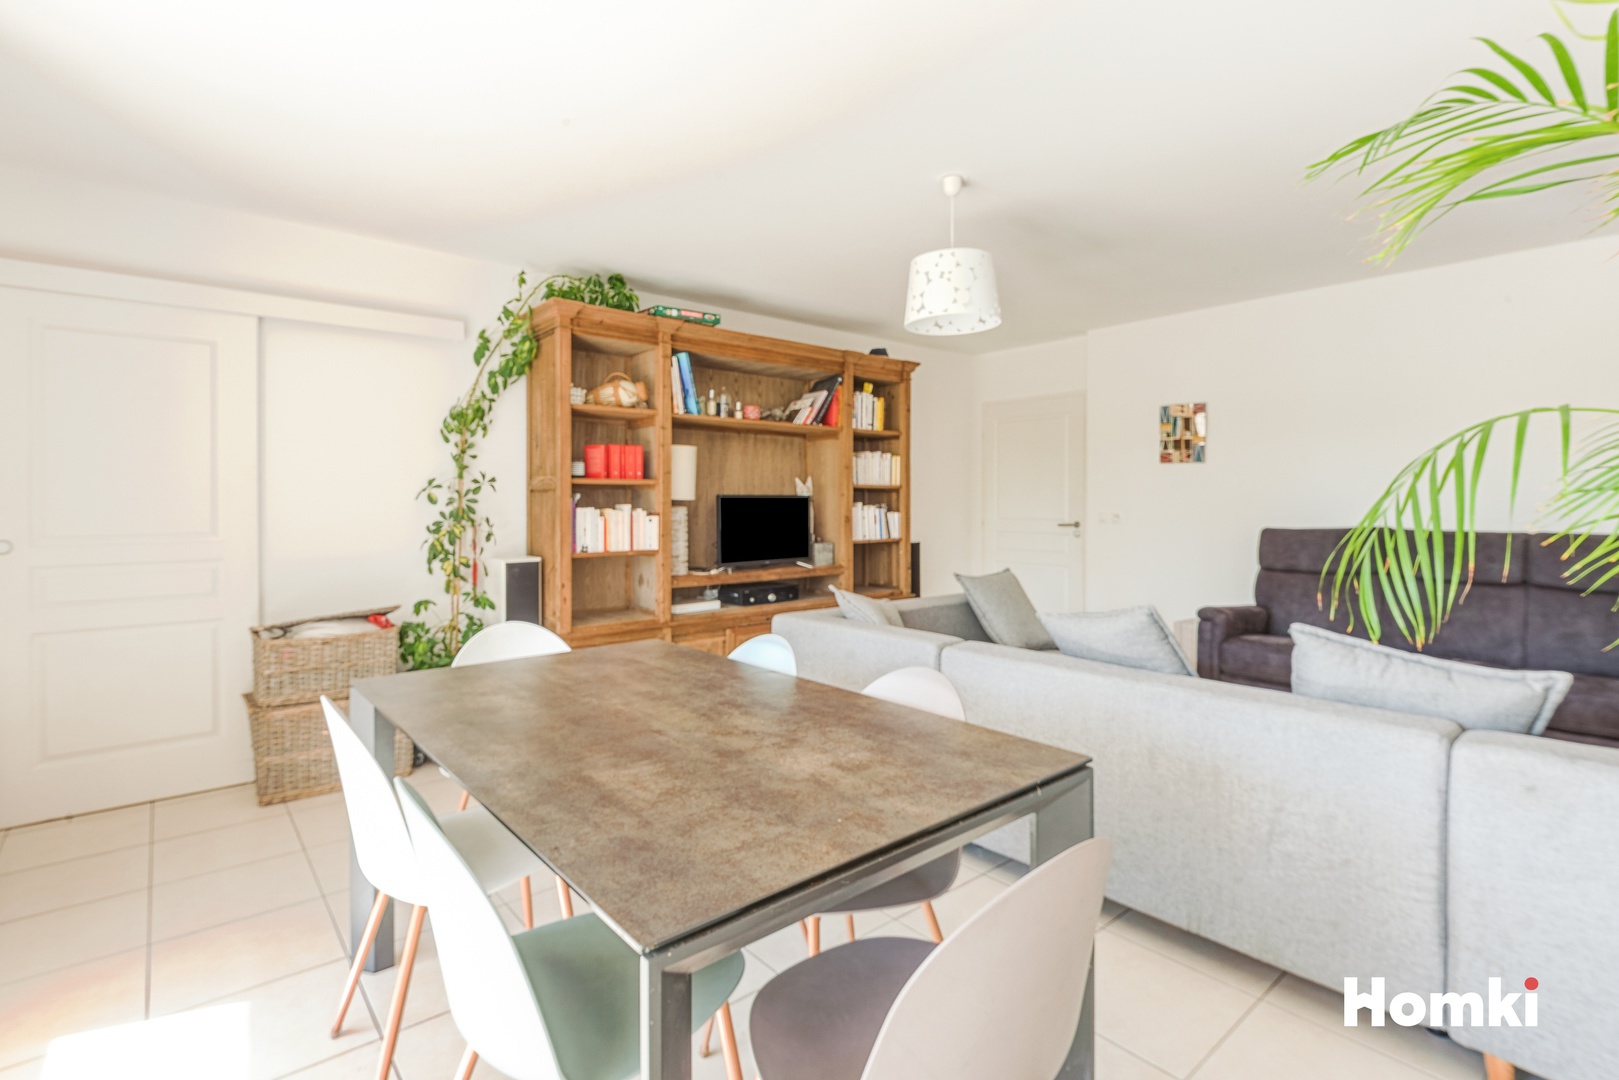 Homki - Vente Appartement  de 93.0 m² à Marseille 13012